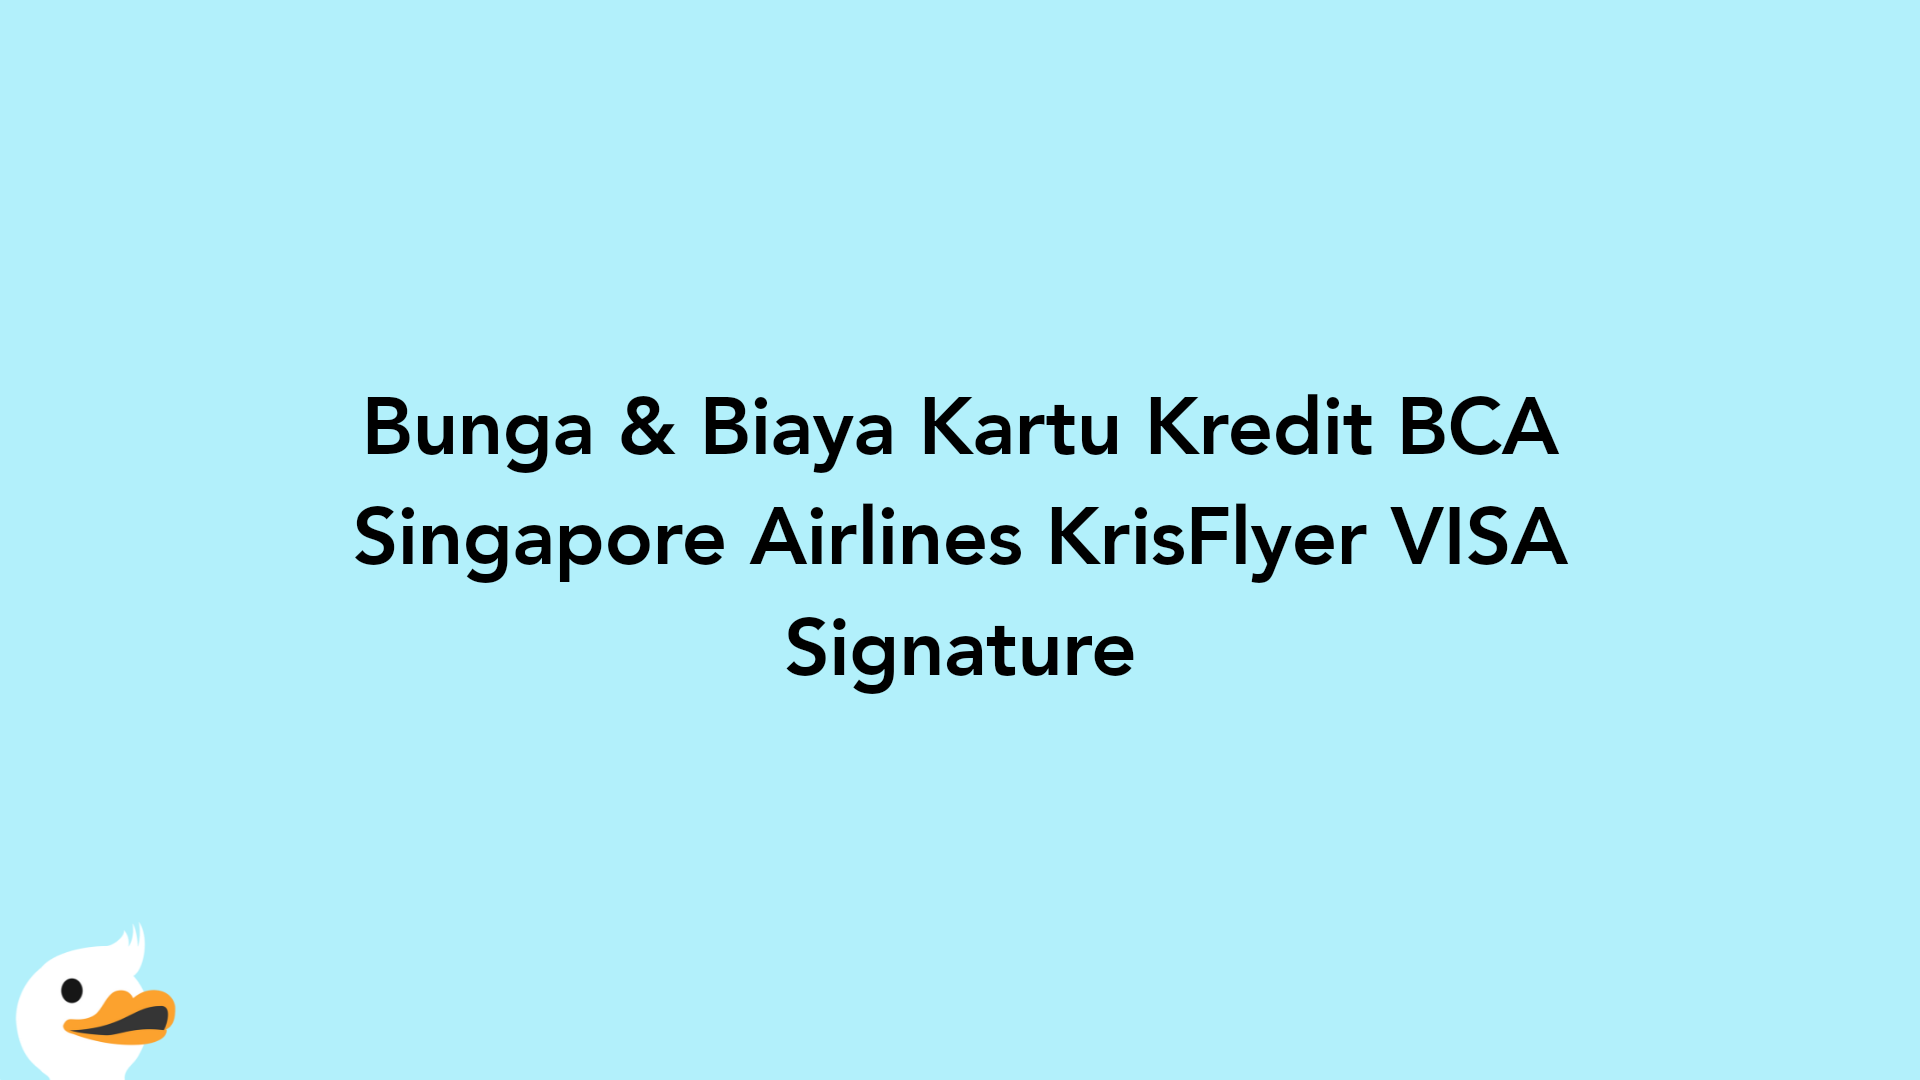 Bunga & Biaya Kartu Kredit BCA Singapore Airlines KrisFlyer VISA Signature